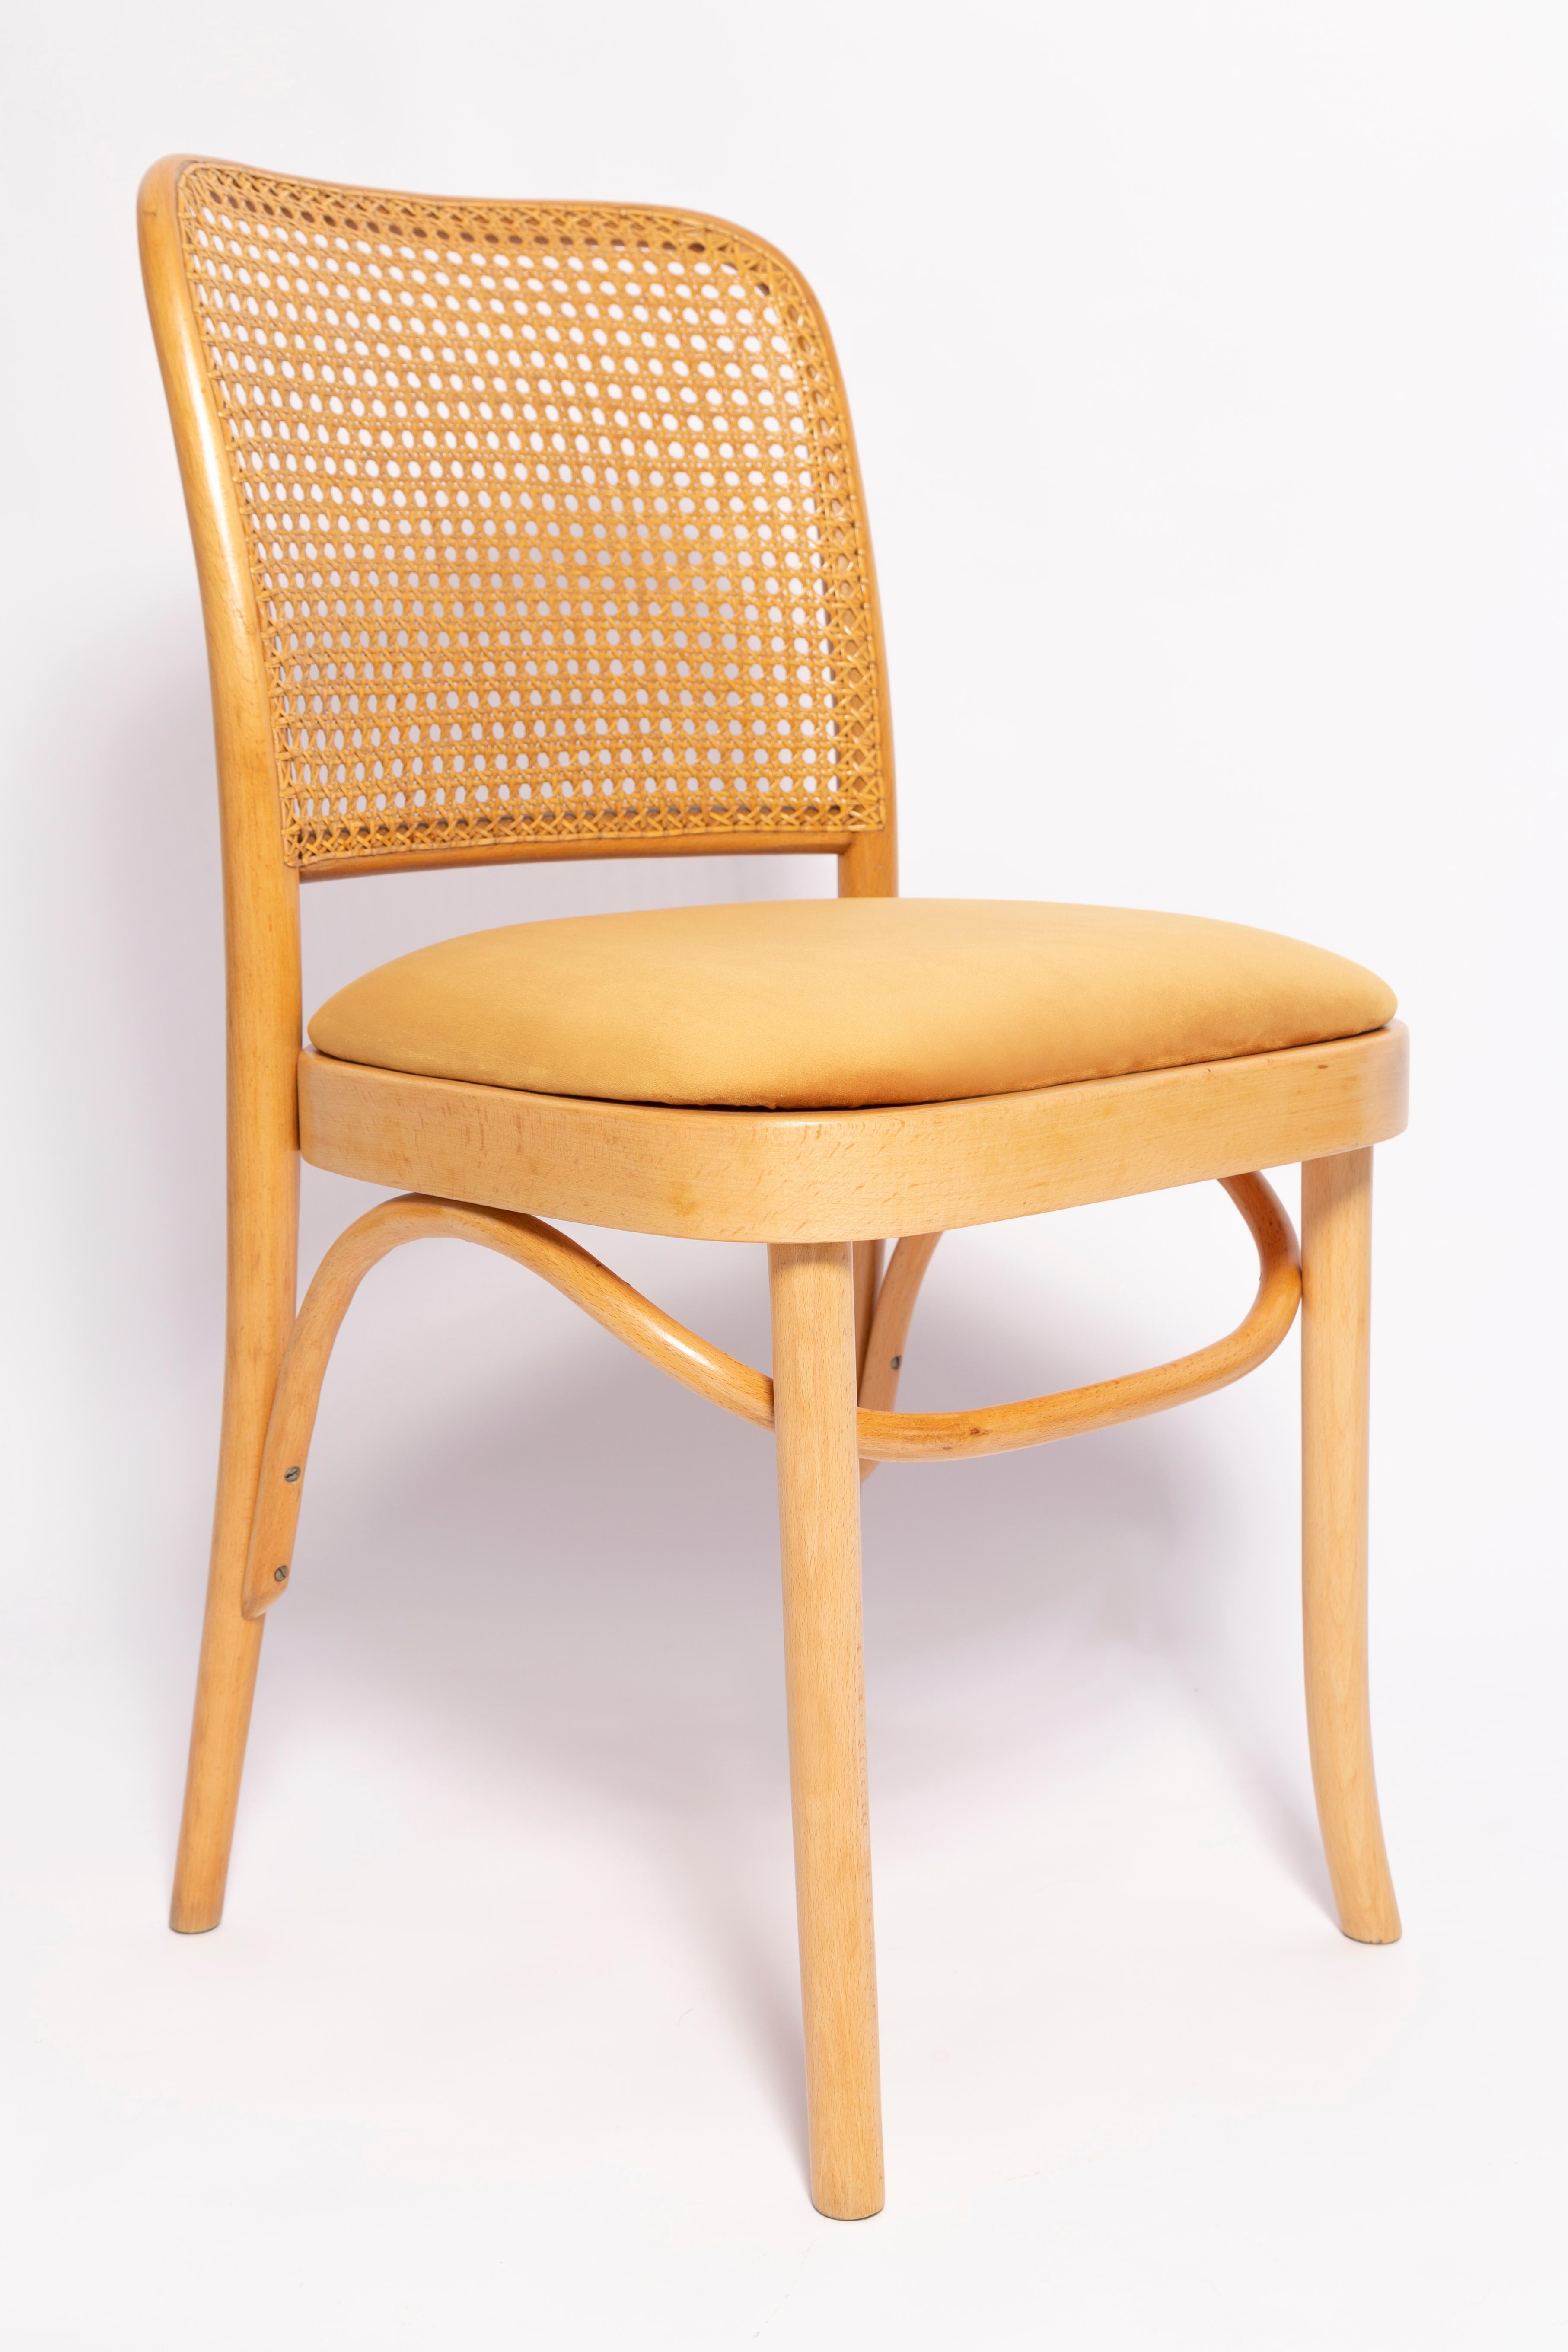 Magnifique chaise du milieu du siècle en rotin, velours et bois. 

Ils ont été produits dans l'usine de menuiserie Thonet dans les années 1960. Nous les avons entièrement rénovés. La construction est en bois de hêtre teinté à l'eau en brun clair.